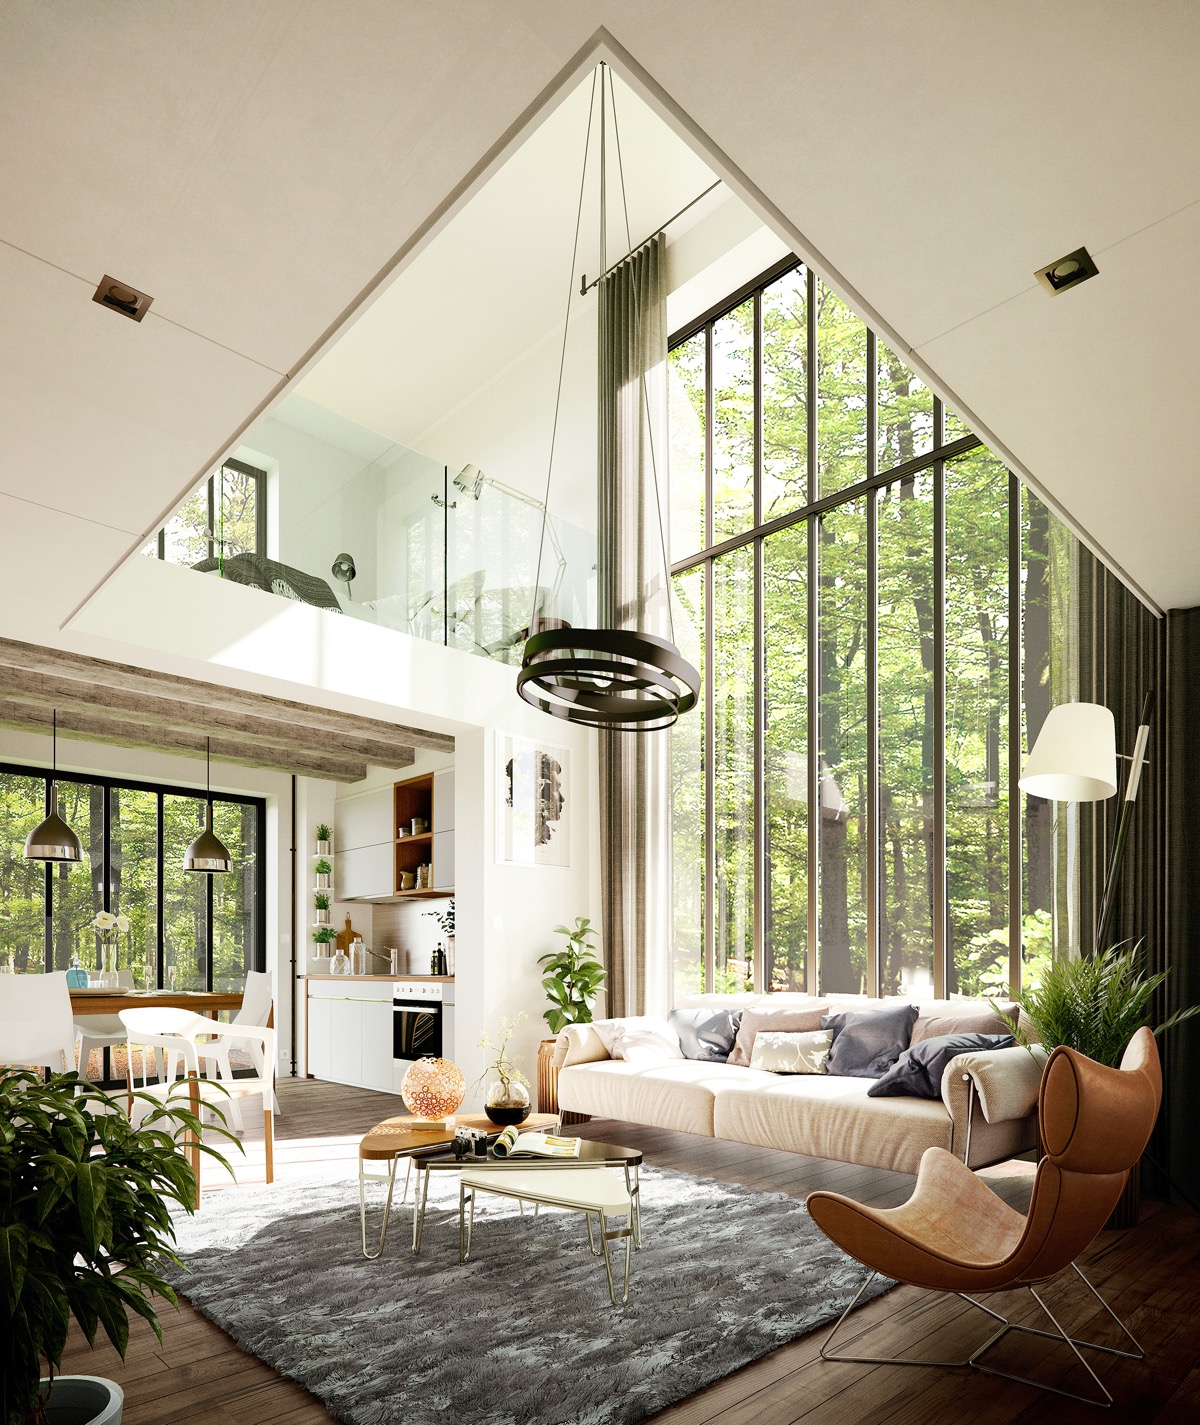 ntury-Modern-Furniture-High-Ceilings-Large-Windows.jpg